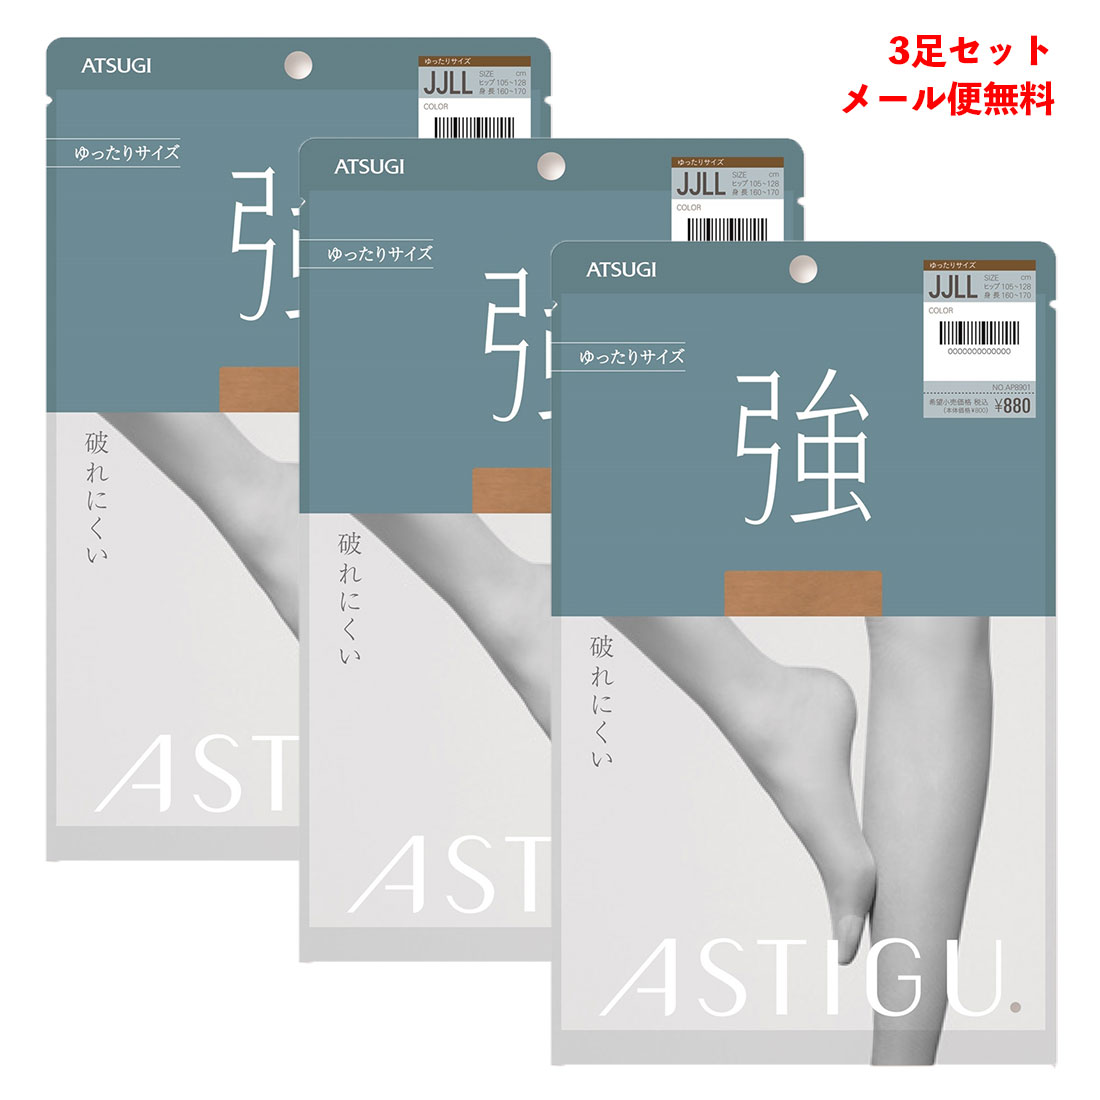 【3足セット】ASTIGU【強】破れにくい スト...の商品画像